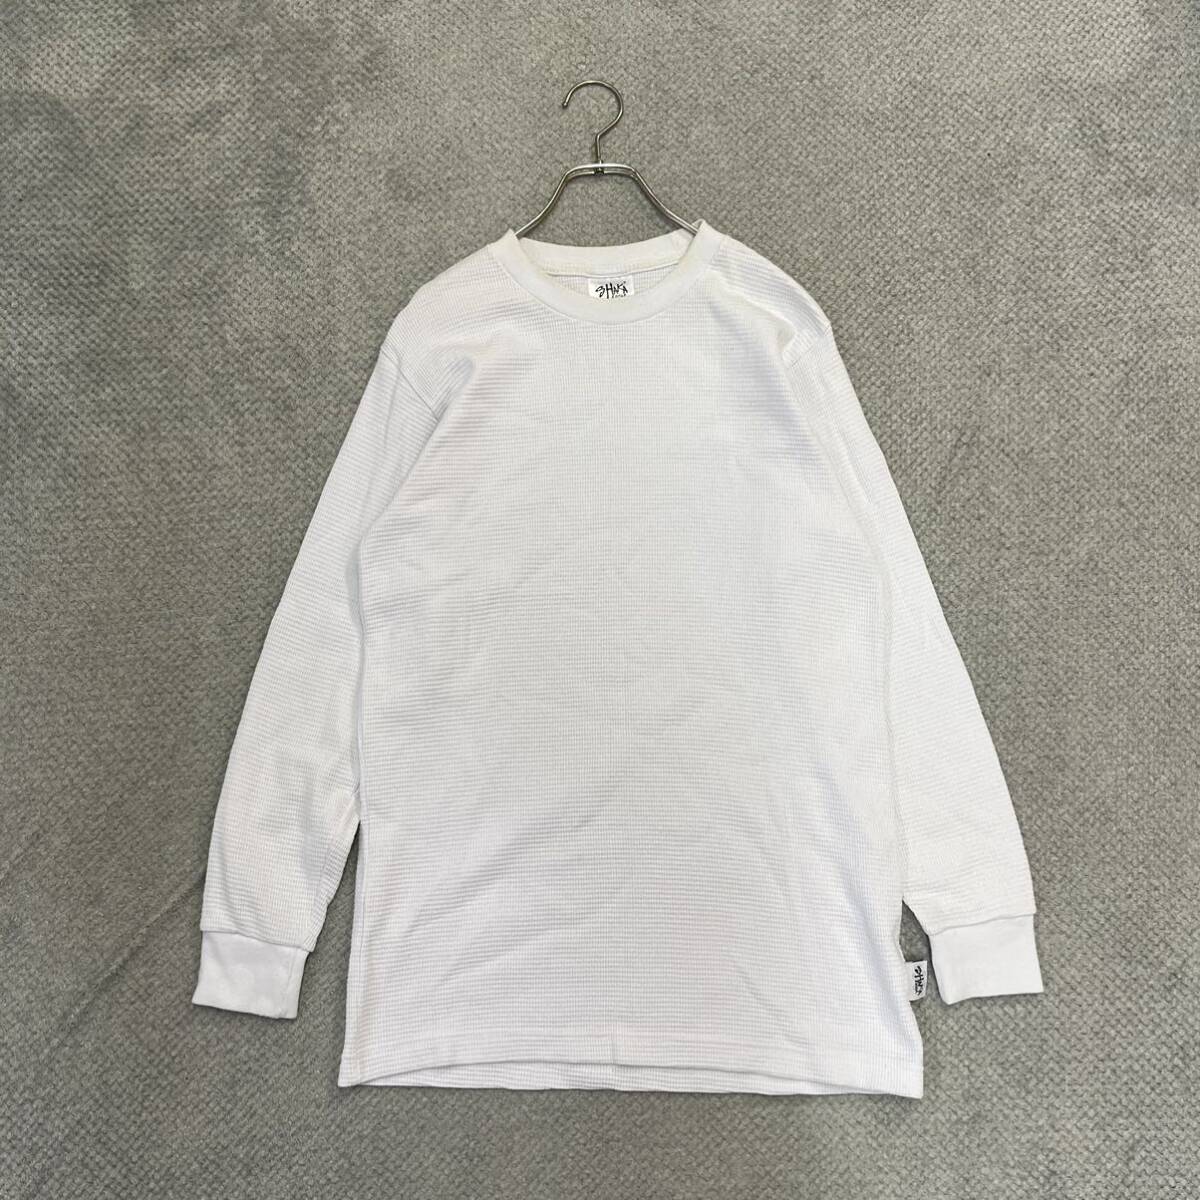 1円スタート! （4）SHAKA WEAR シャカウェア サーマルロンT サイズS 長袖Tシャツ USAコットン ホワイト 白 無地 メンズ トップス 最落なしの画像1